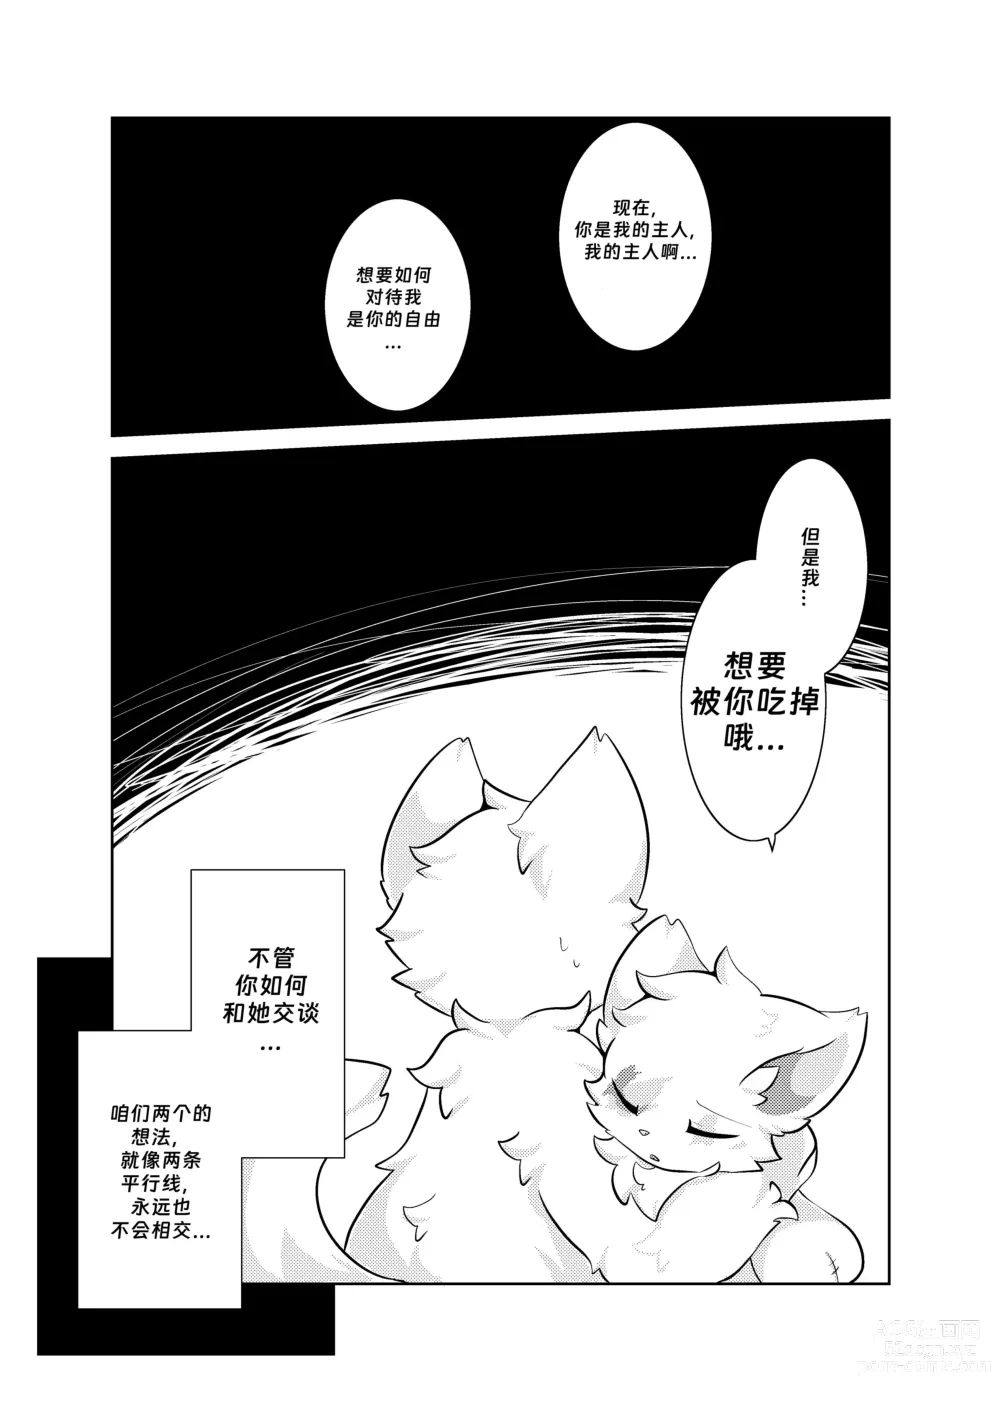 Page 14 of doujinshi Bokuyo motsuni no oishii seikatu.R-18G